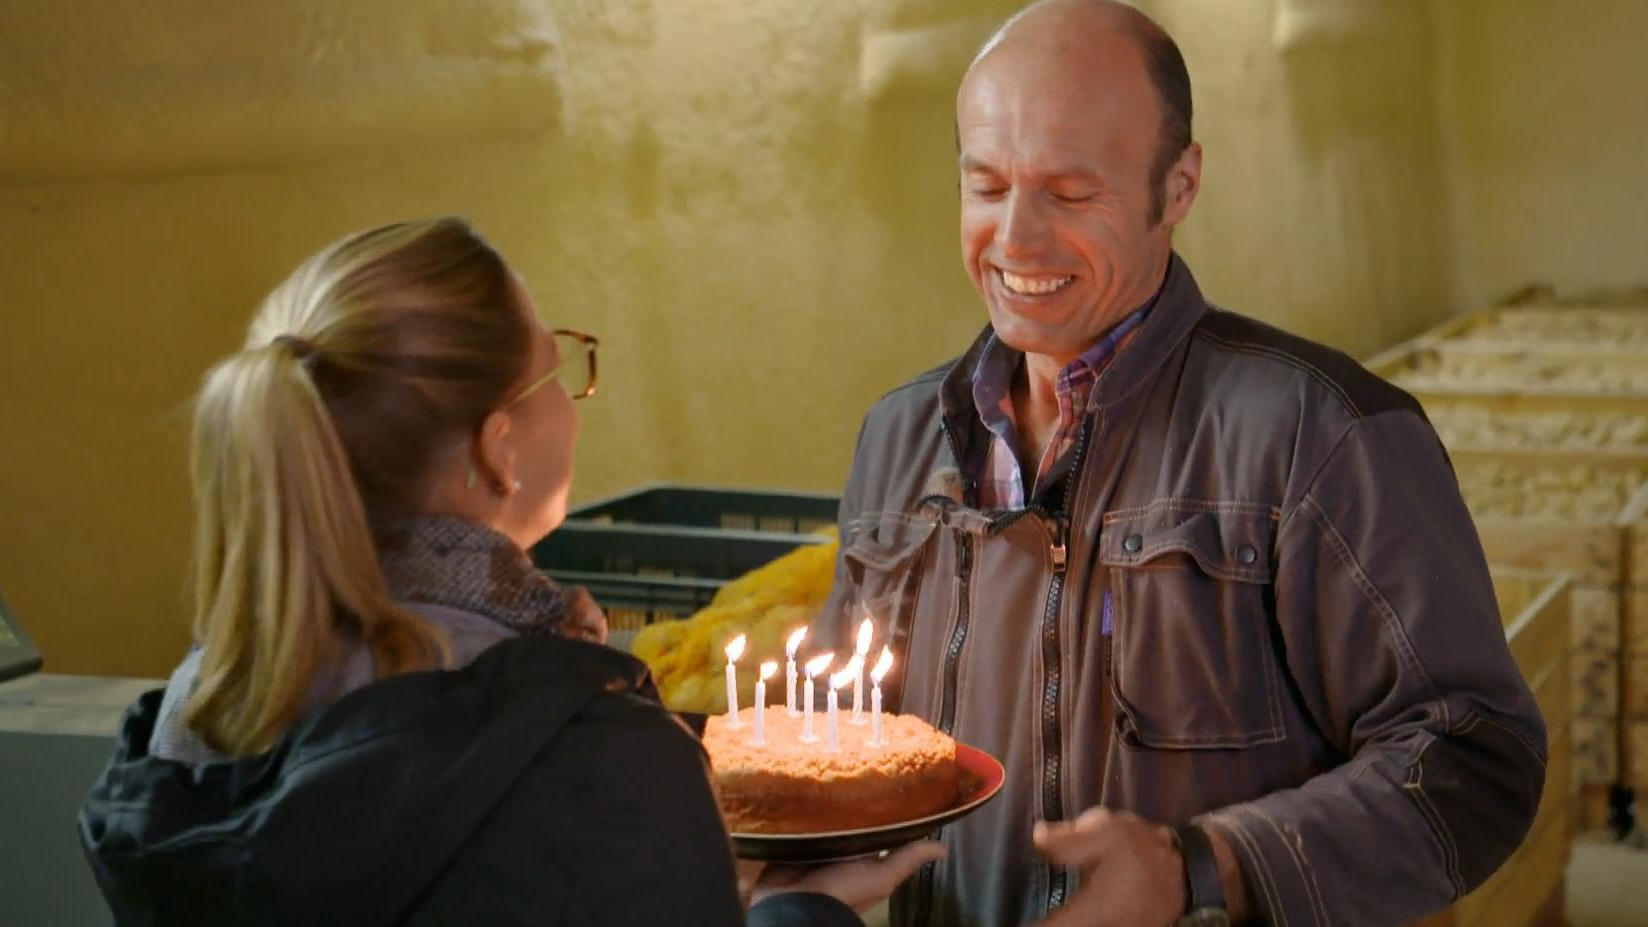 Zum Geburtstag überrascht Steffy Justins Vater mit einer Torte Bauer sucht Frau International: Bonne Anniversaire